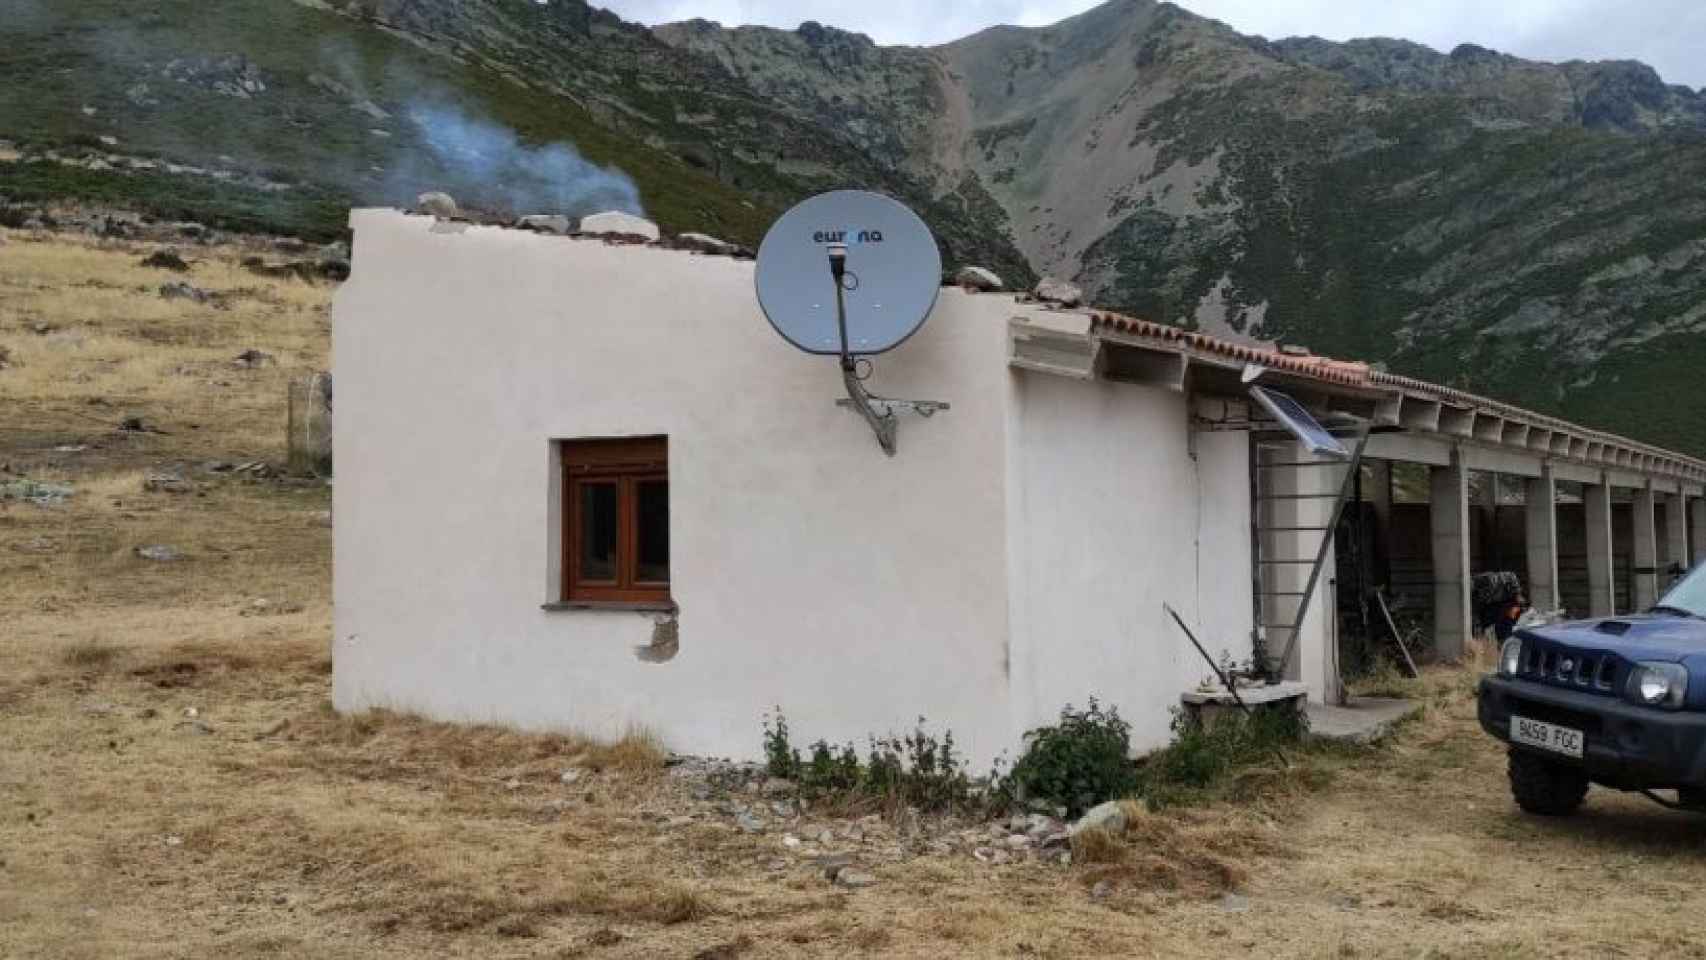 Internet Satélite de Eurona en el chozo de los pastores trashumantes ubicado en el puerto de montaña de Piedrahita y Pando, en Vidrieros (Palencia)